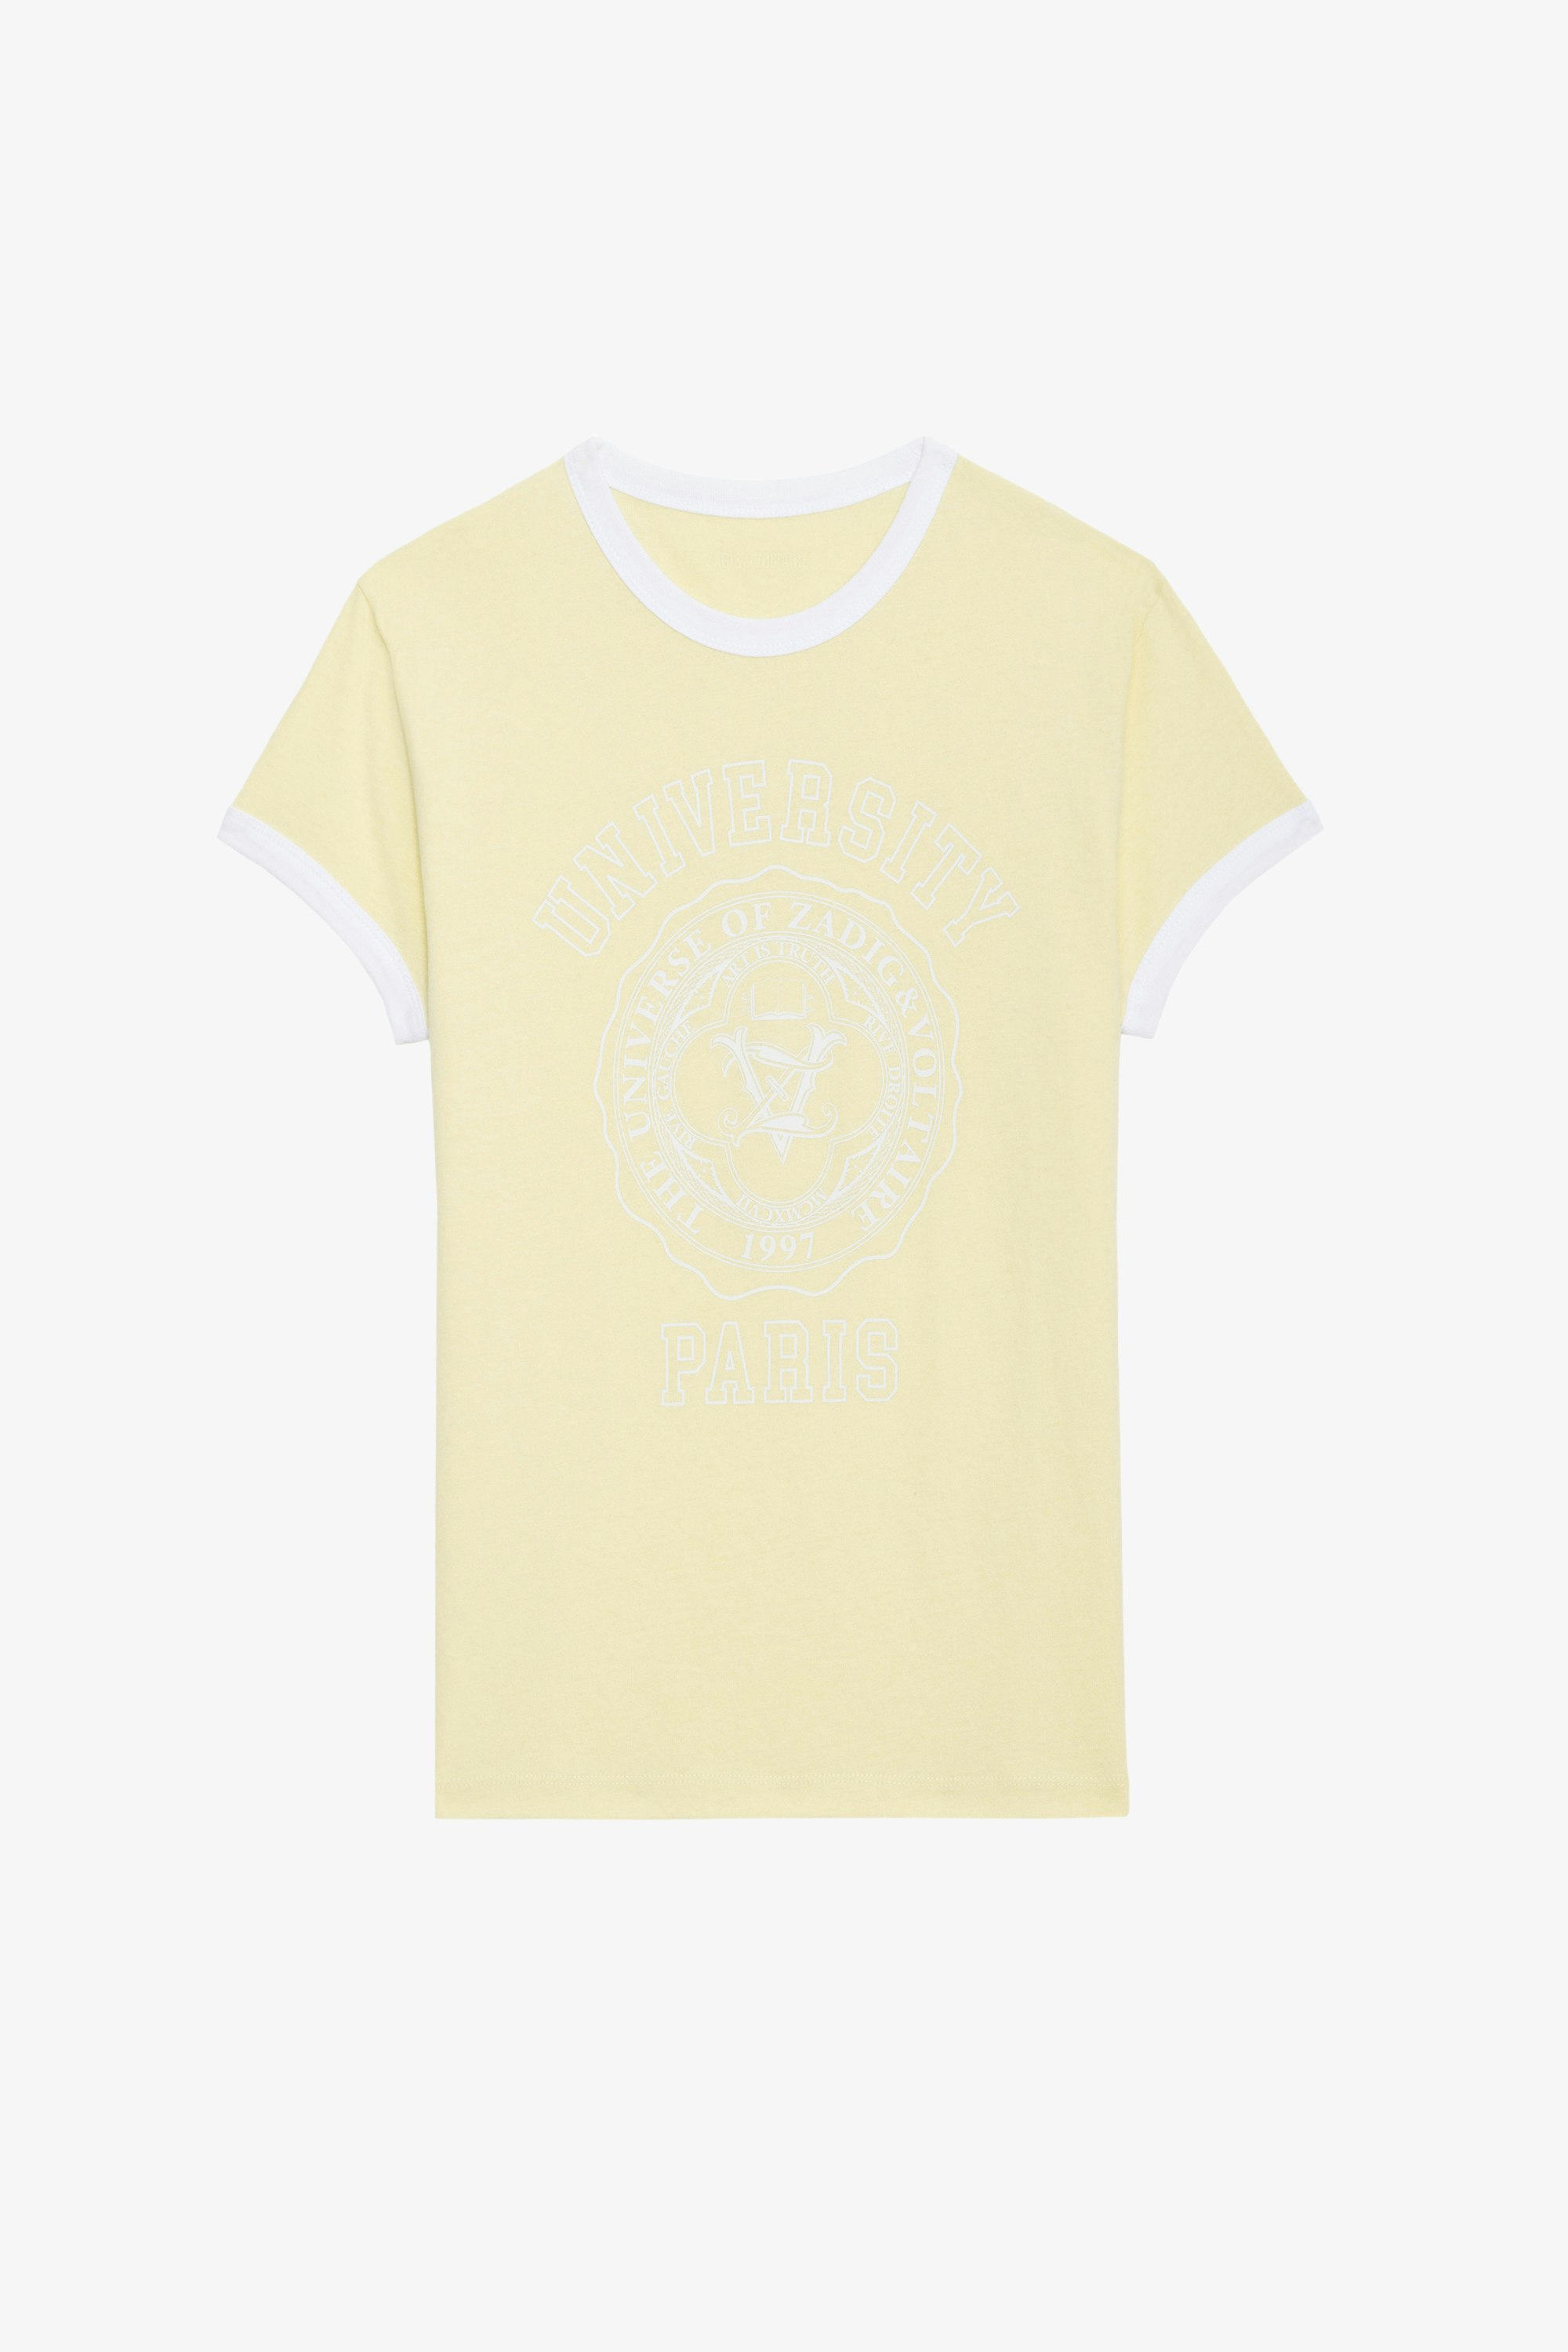 T-shirt Walk University - T-shirt en coton jaune clair à manches courtes, motif University et bords contrastés.